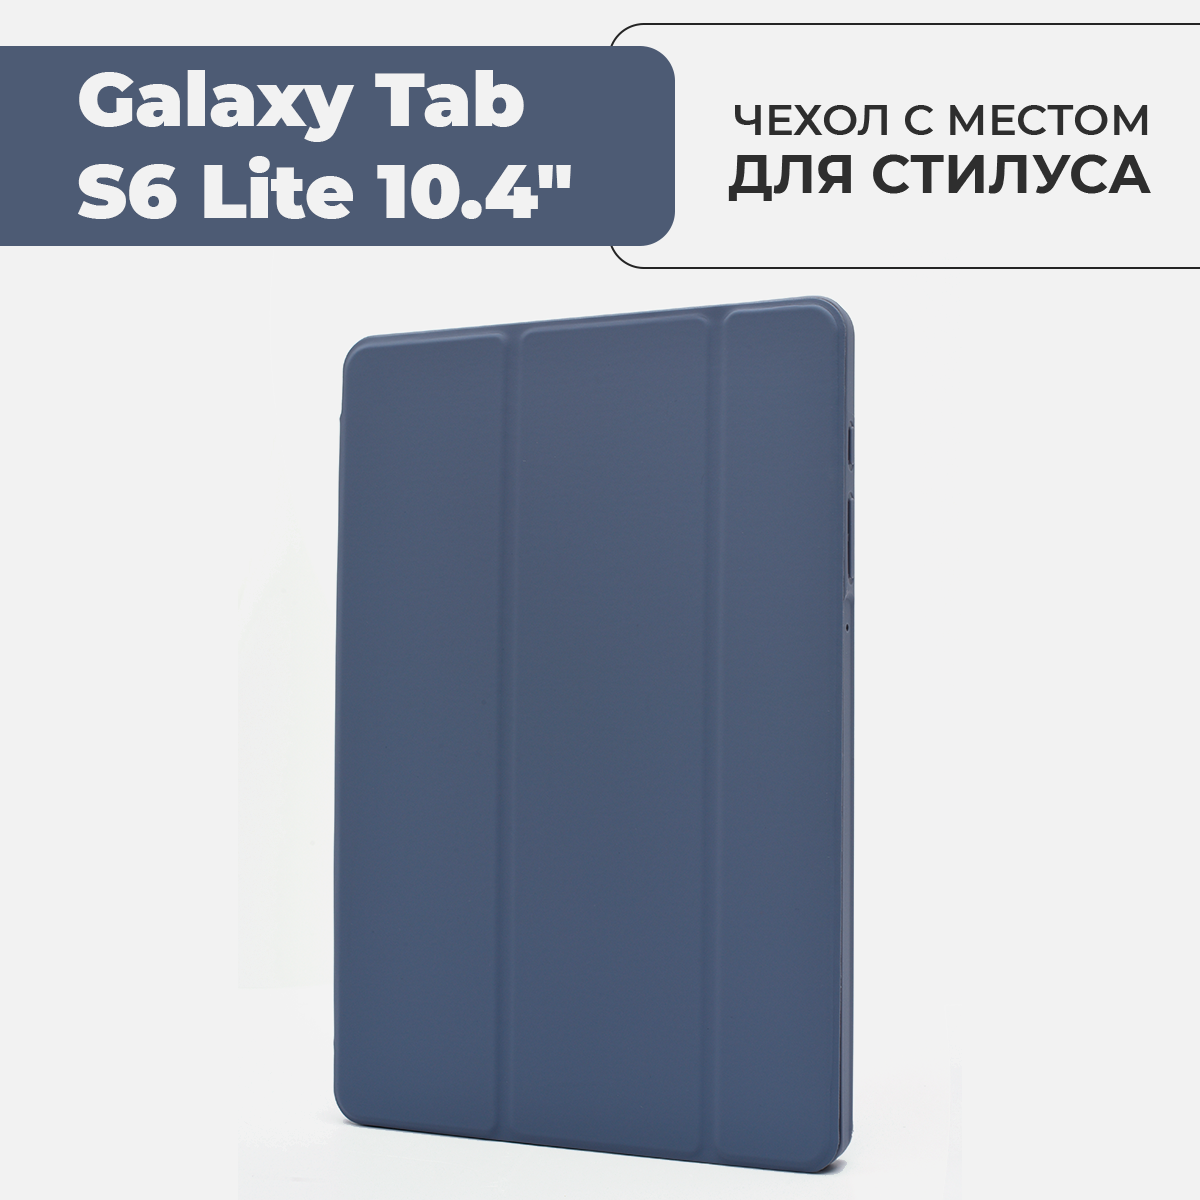 S6iPad-10.4